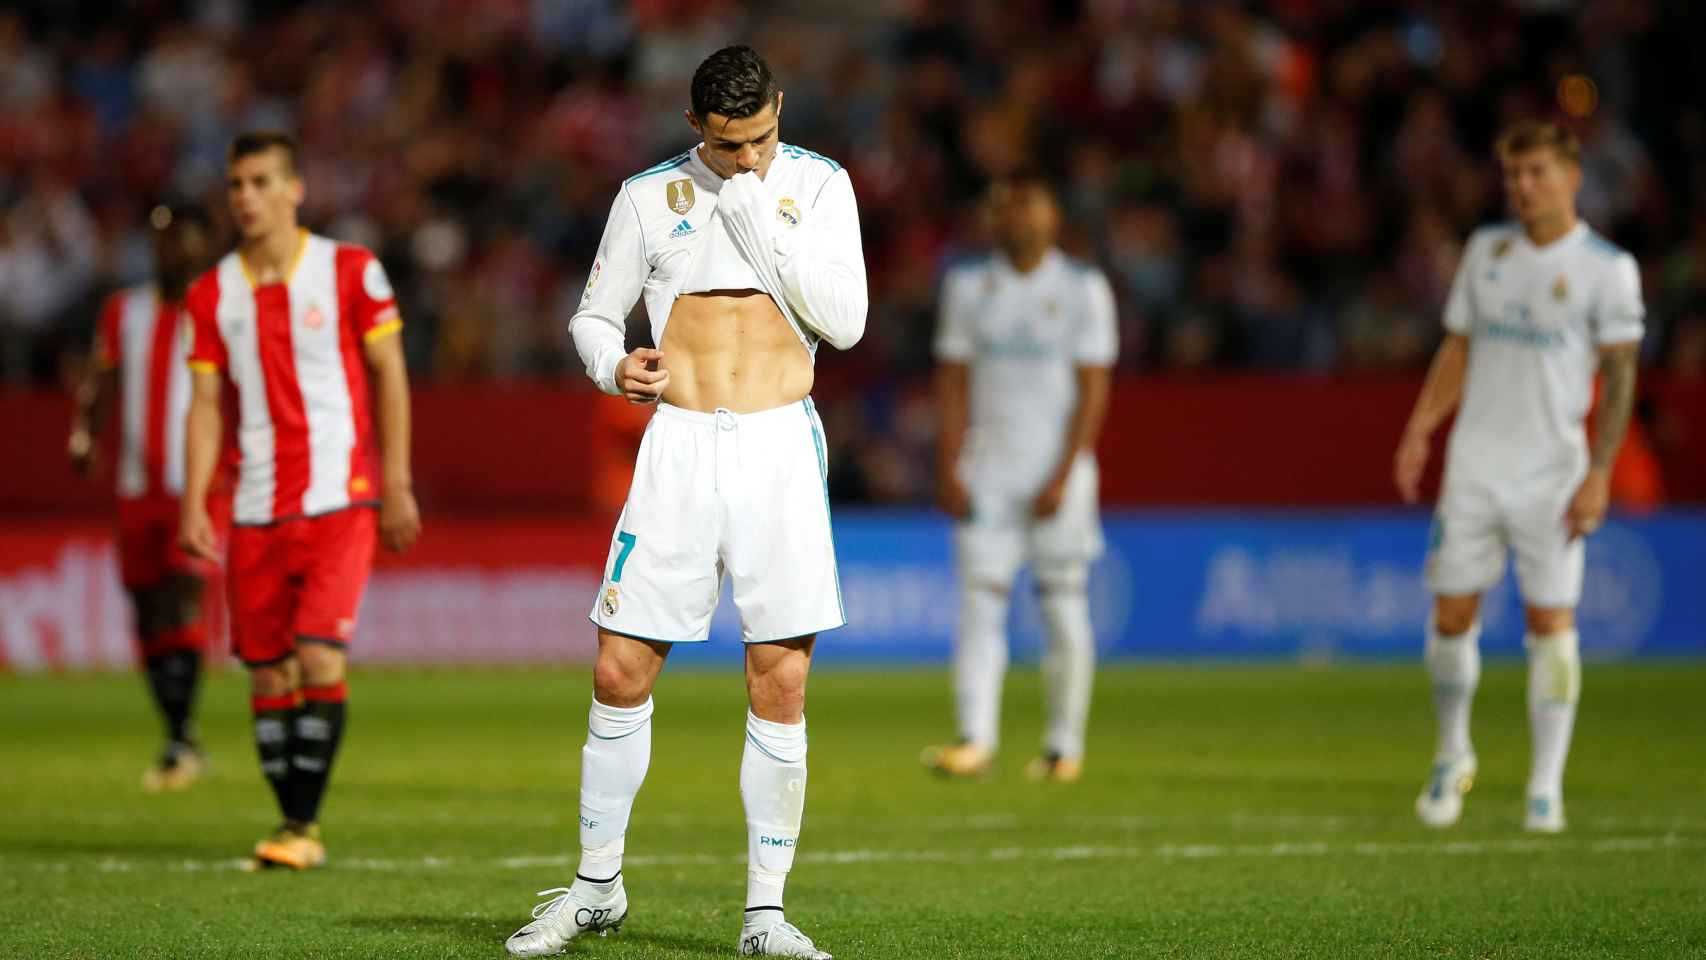 Batacazo del Real Madrid. Un Cristiano cabizbajo representó al equipo de Zidane en Girona. Dolorosa derrota de los blancos (2-1) que les aleja del liderato.